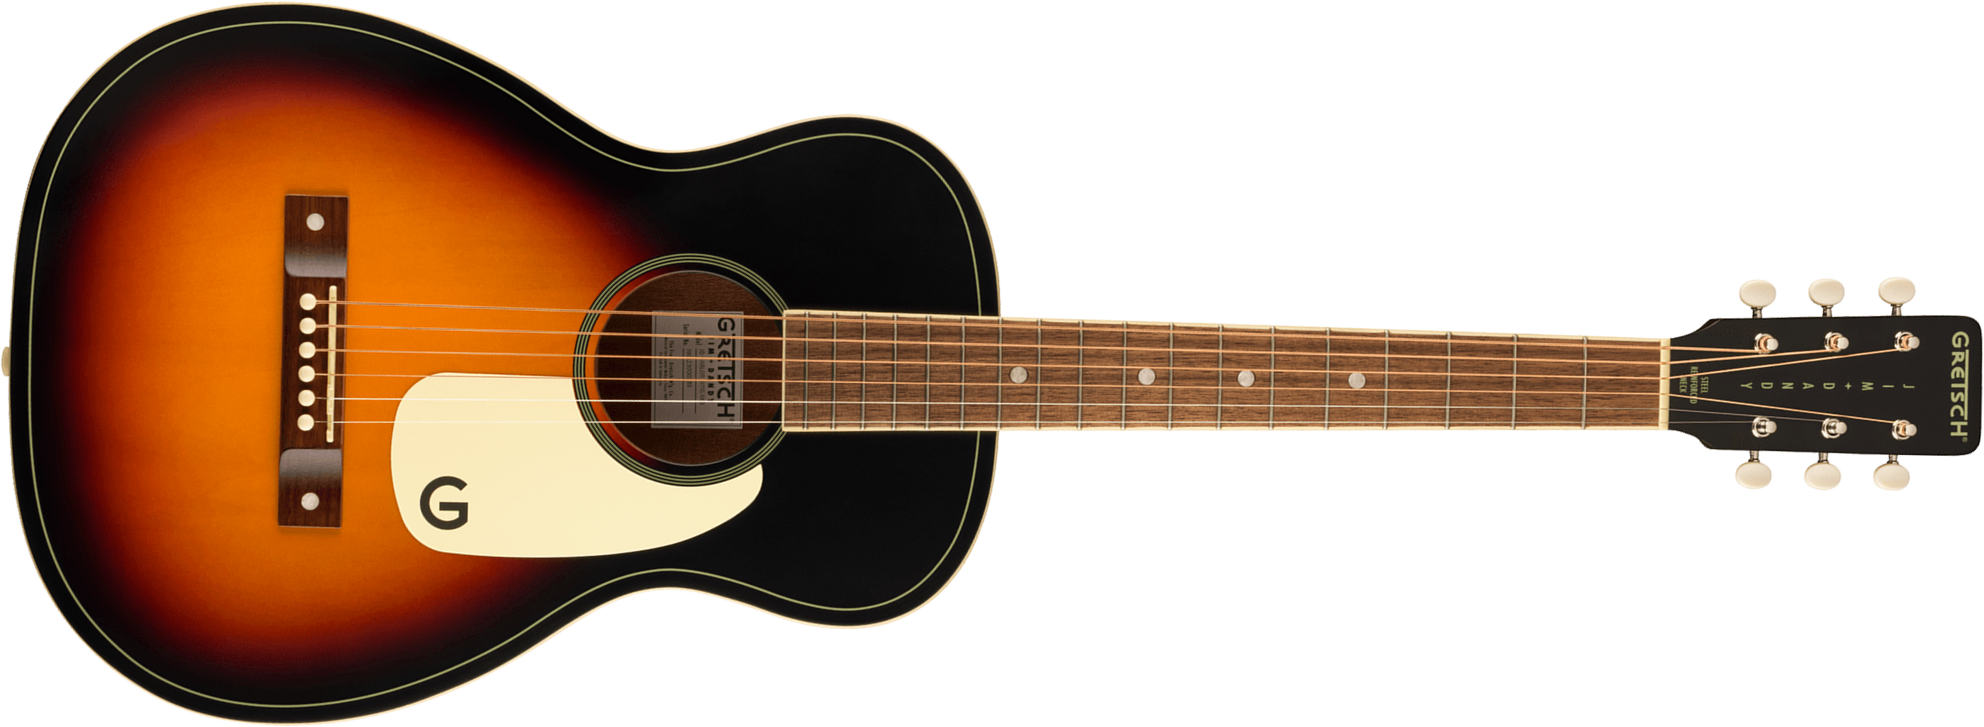 Gretsch Jim Dandy Parlor Tout Tilleul Noy - Rex Burst Semi Gloss - Travel acoustic guitar - Main picture